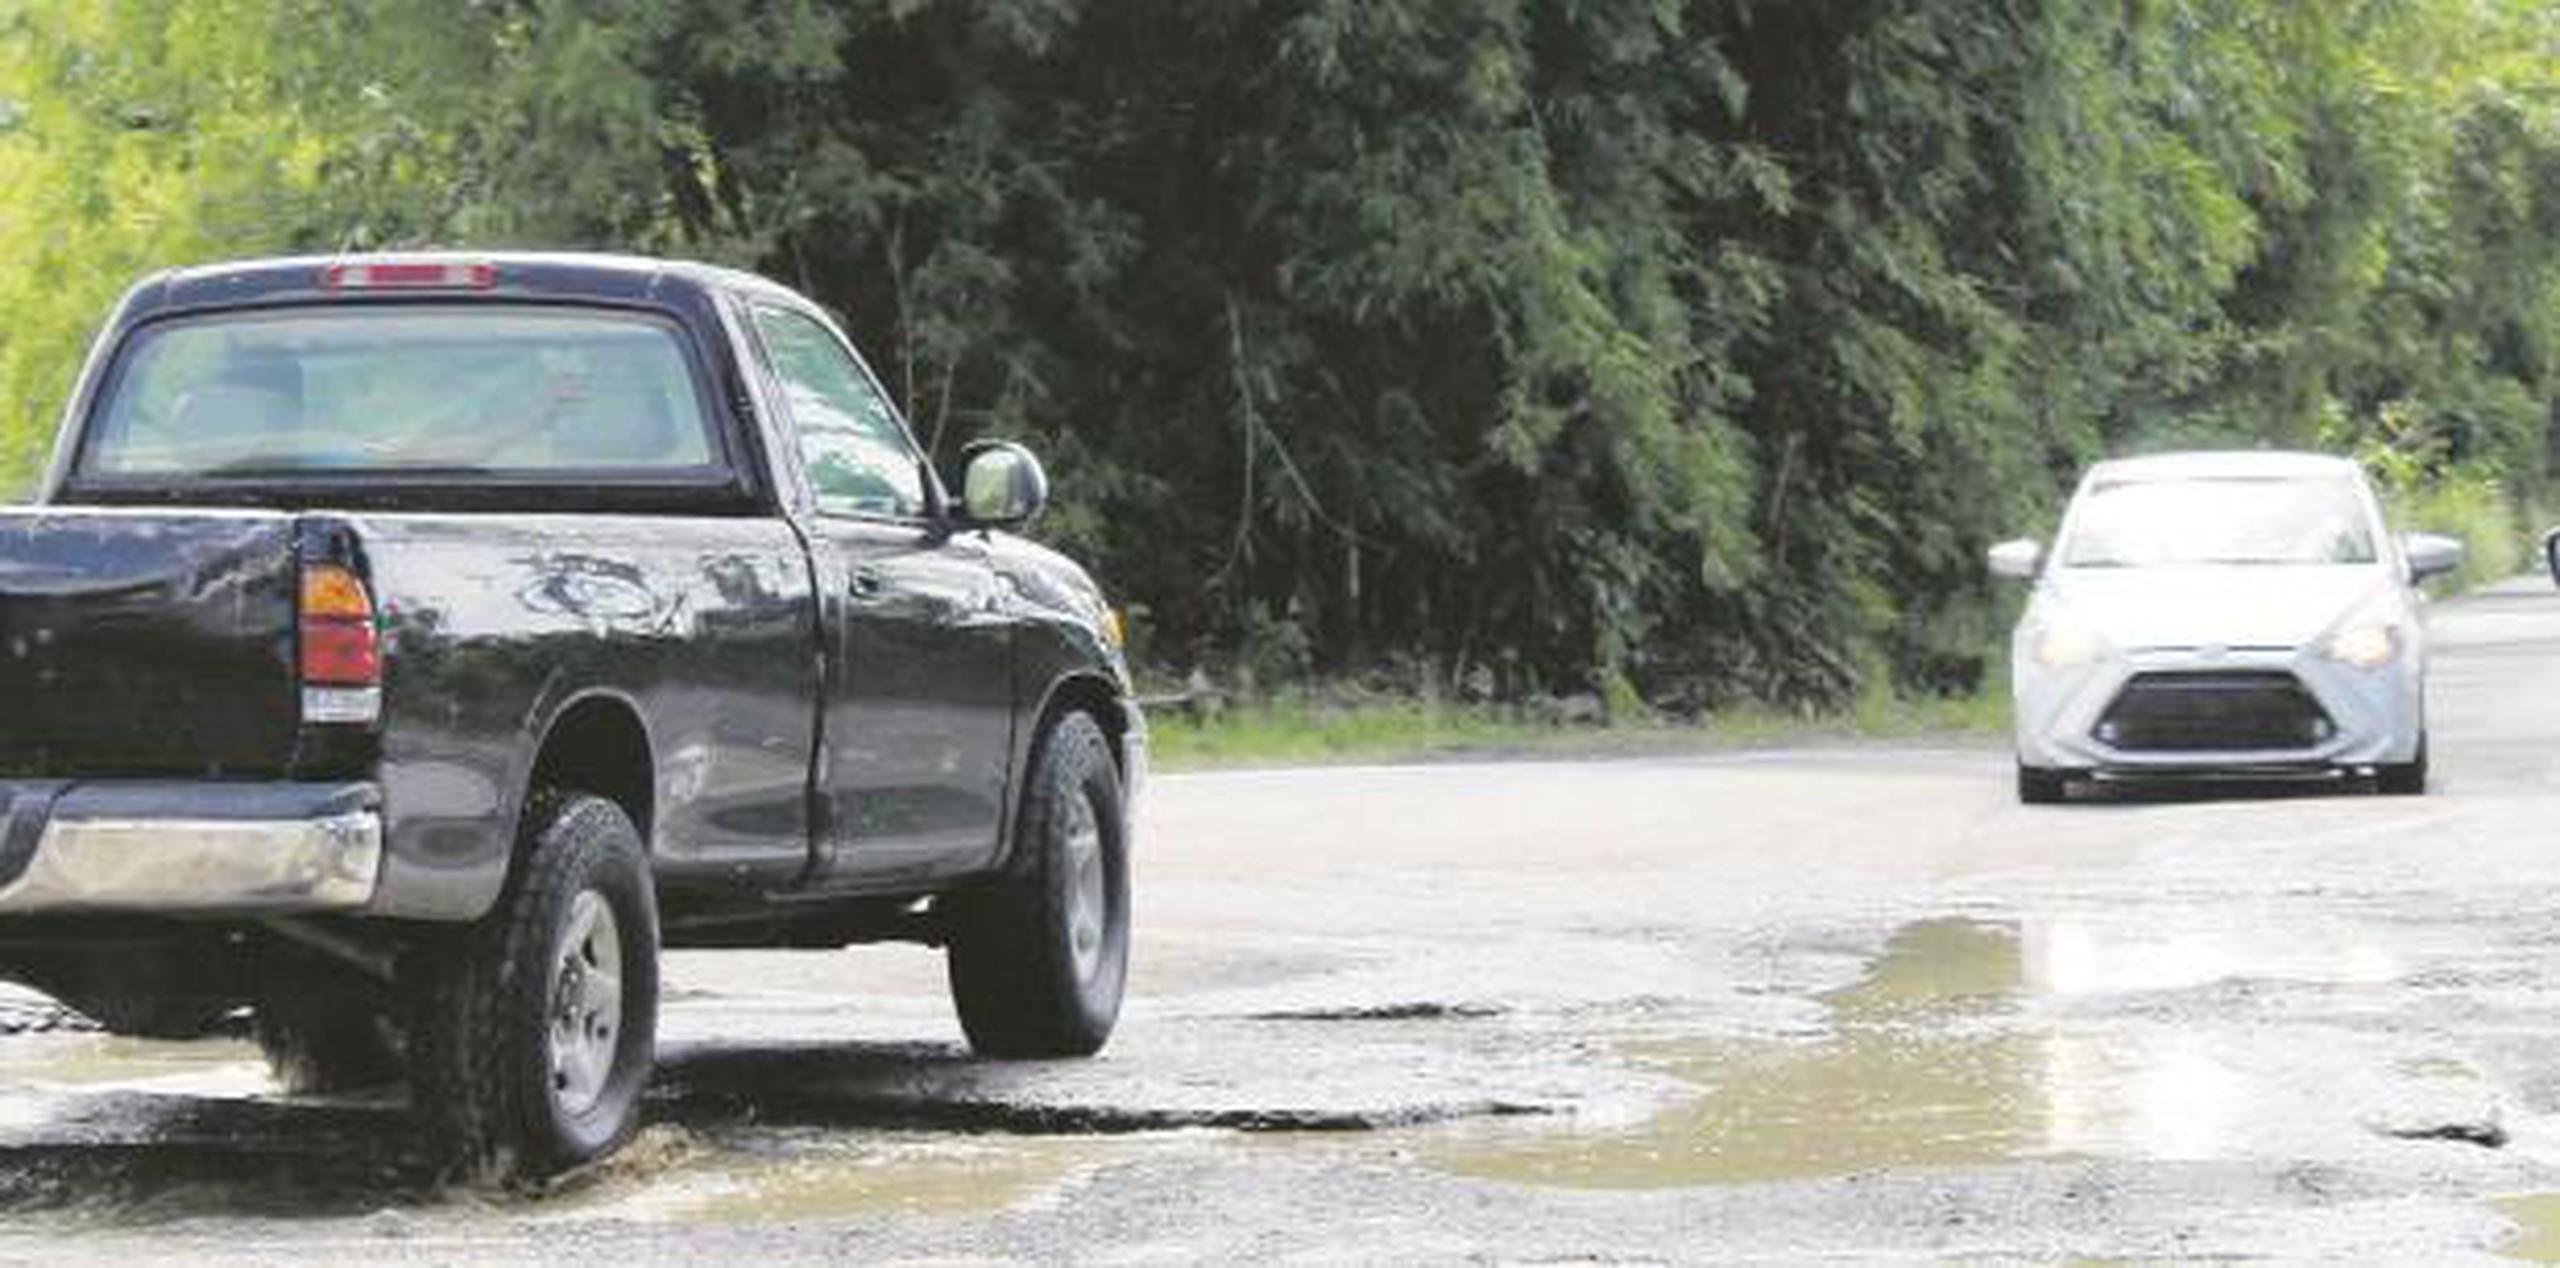 El municipio comisionó un estudio hecho por ingenieros que documenta sobre 200 incidentes de problemas en las carreteras estatales en Añasco, según se explicó en conferencia de prensa. (Suministrada)